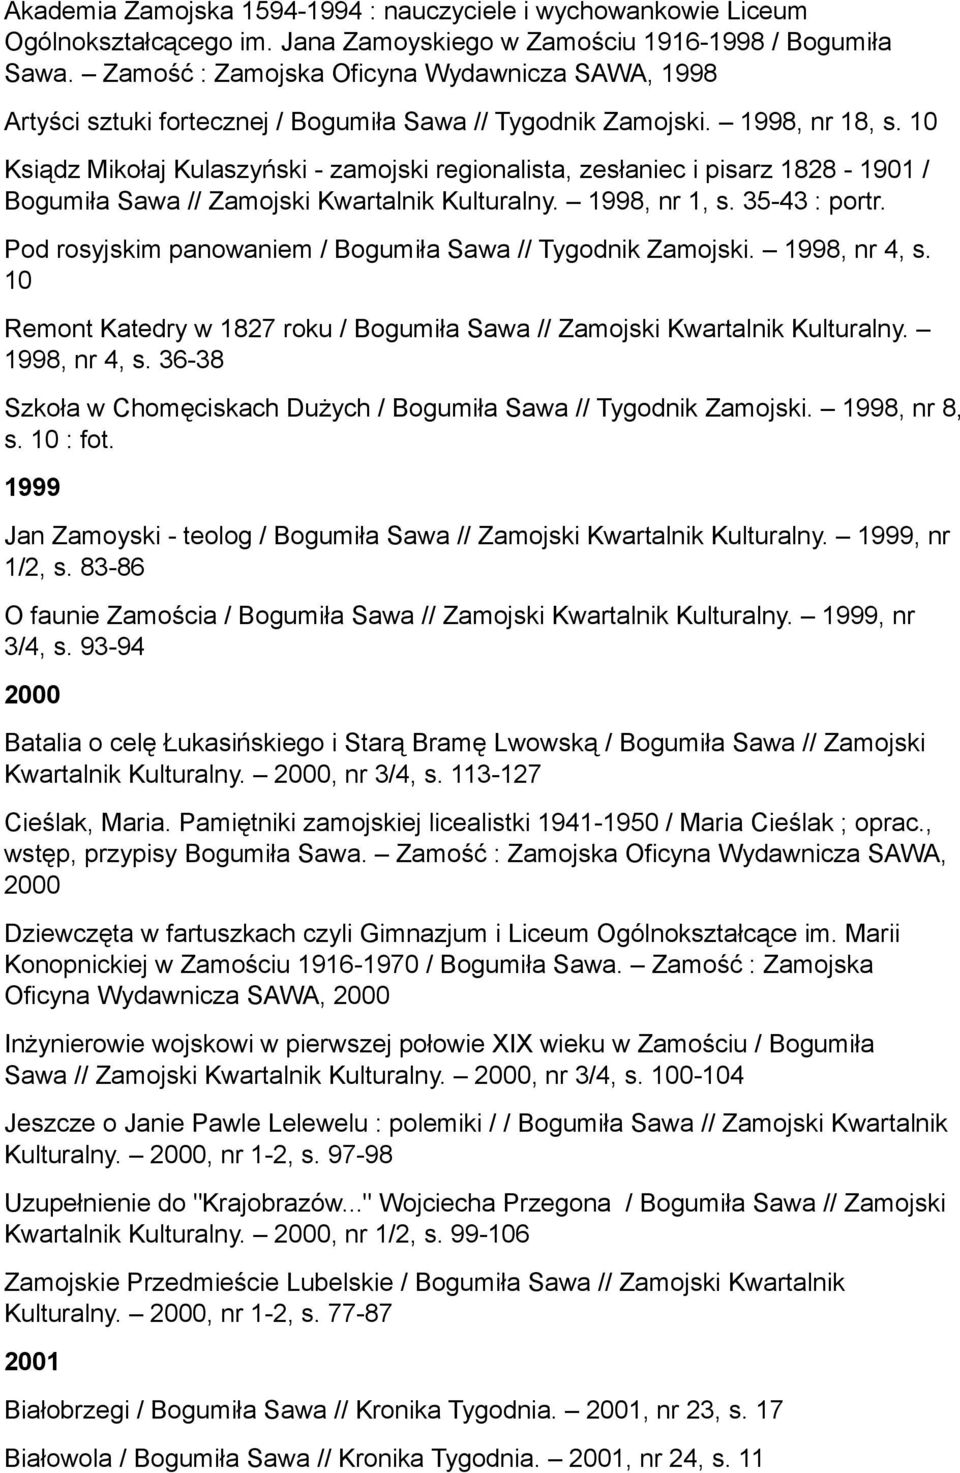 10 Ksiądz Mikołaj Kulaszyński - zamojski regionalista, zesłaniec i pisarz 1828-1901 / Bogumiła Sawa // Zamojski Kwartalnik Kulturalny. 1998, nr 1, s. 35-43 : portr.